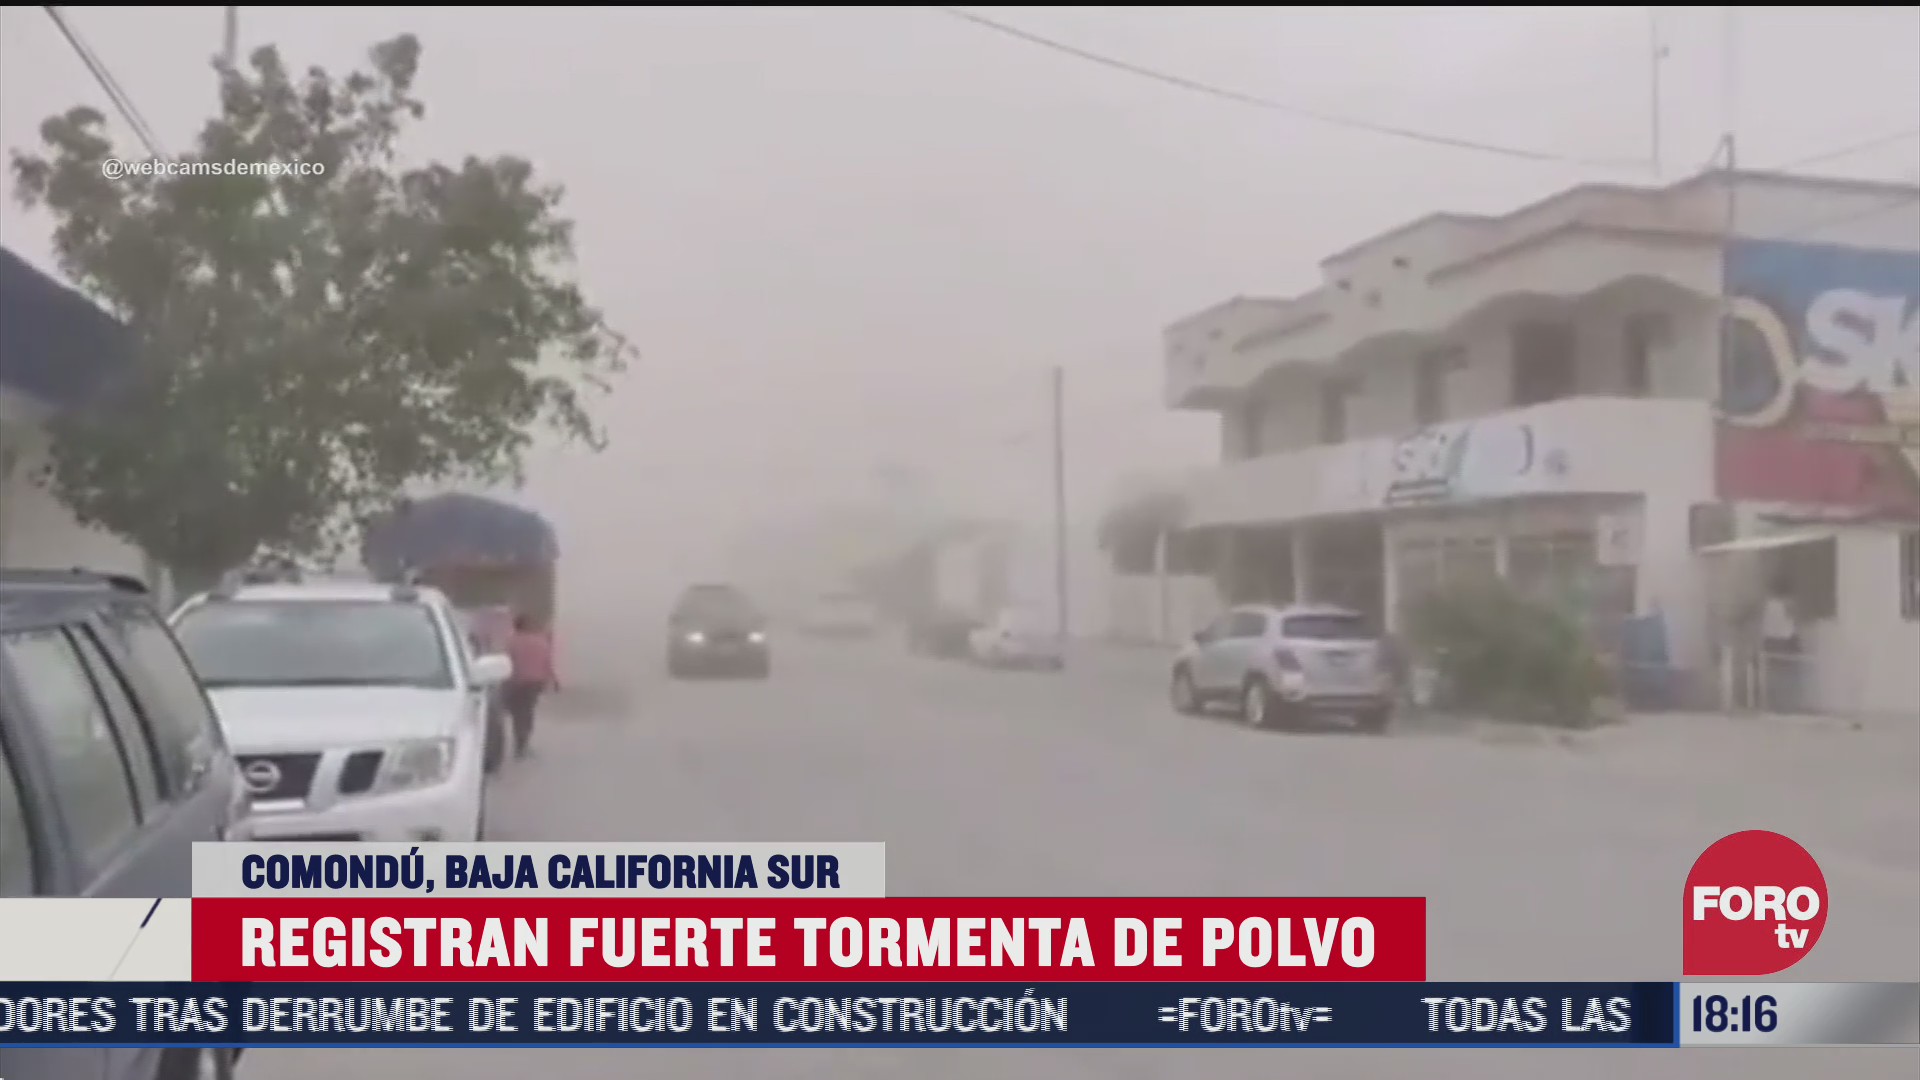 se regista impresionante tormenta de polvo en comondu baja california